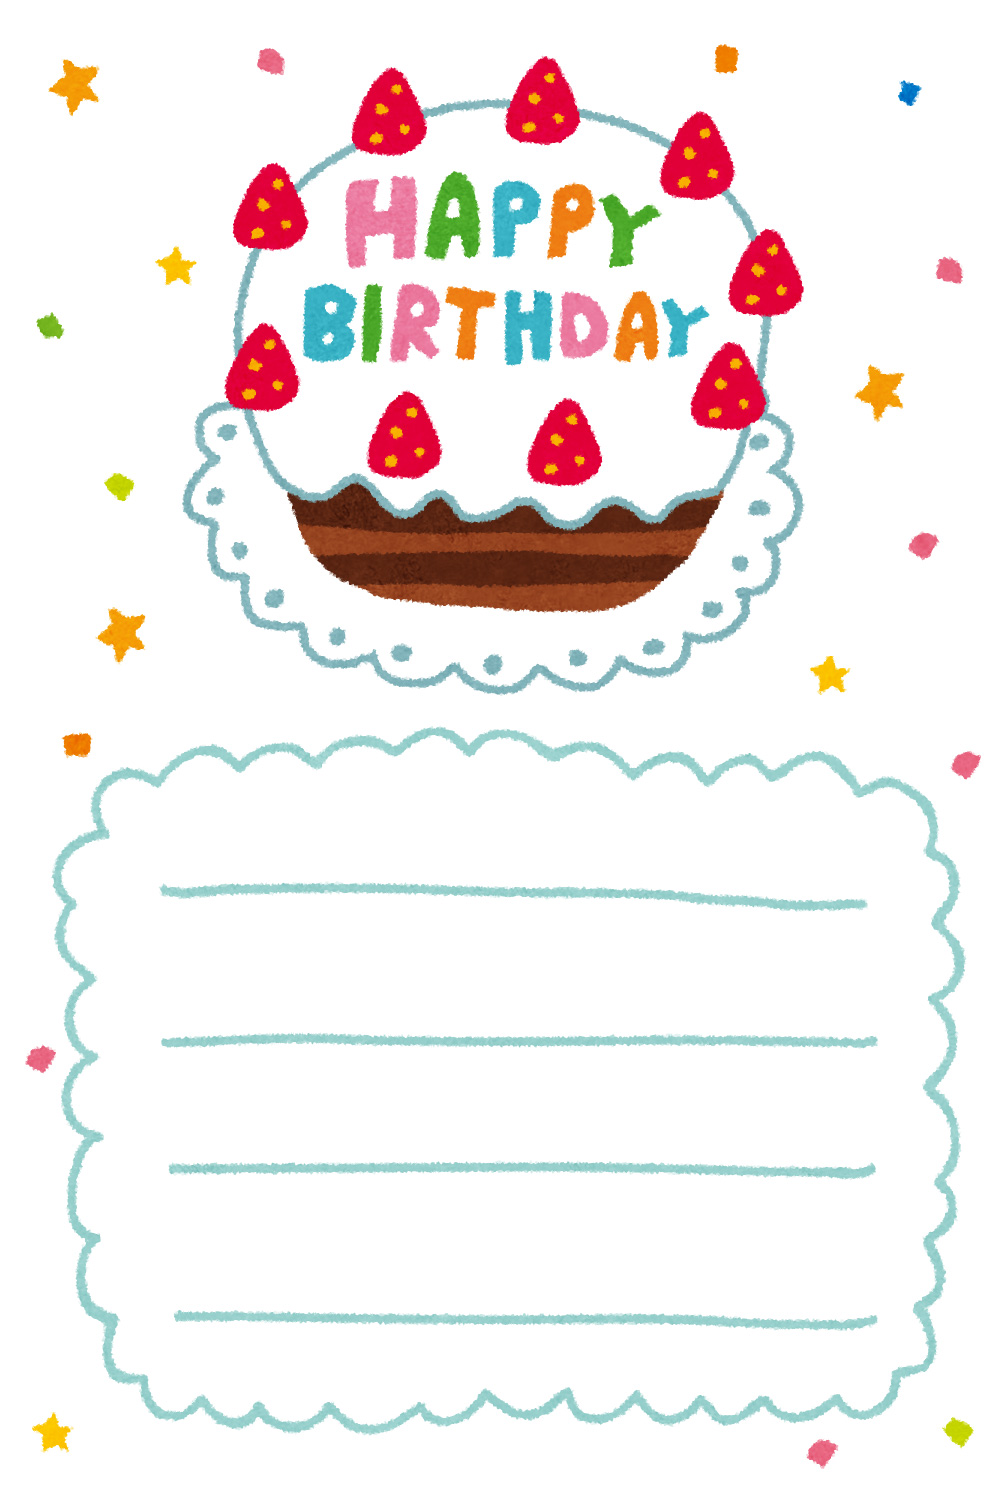 無料イラスト かわいいフリー素材集 誕生日カードのテンプレート バースデーケーキ